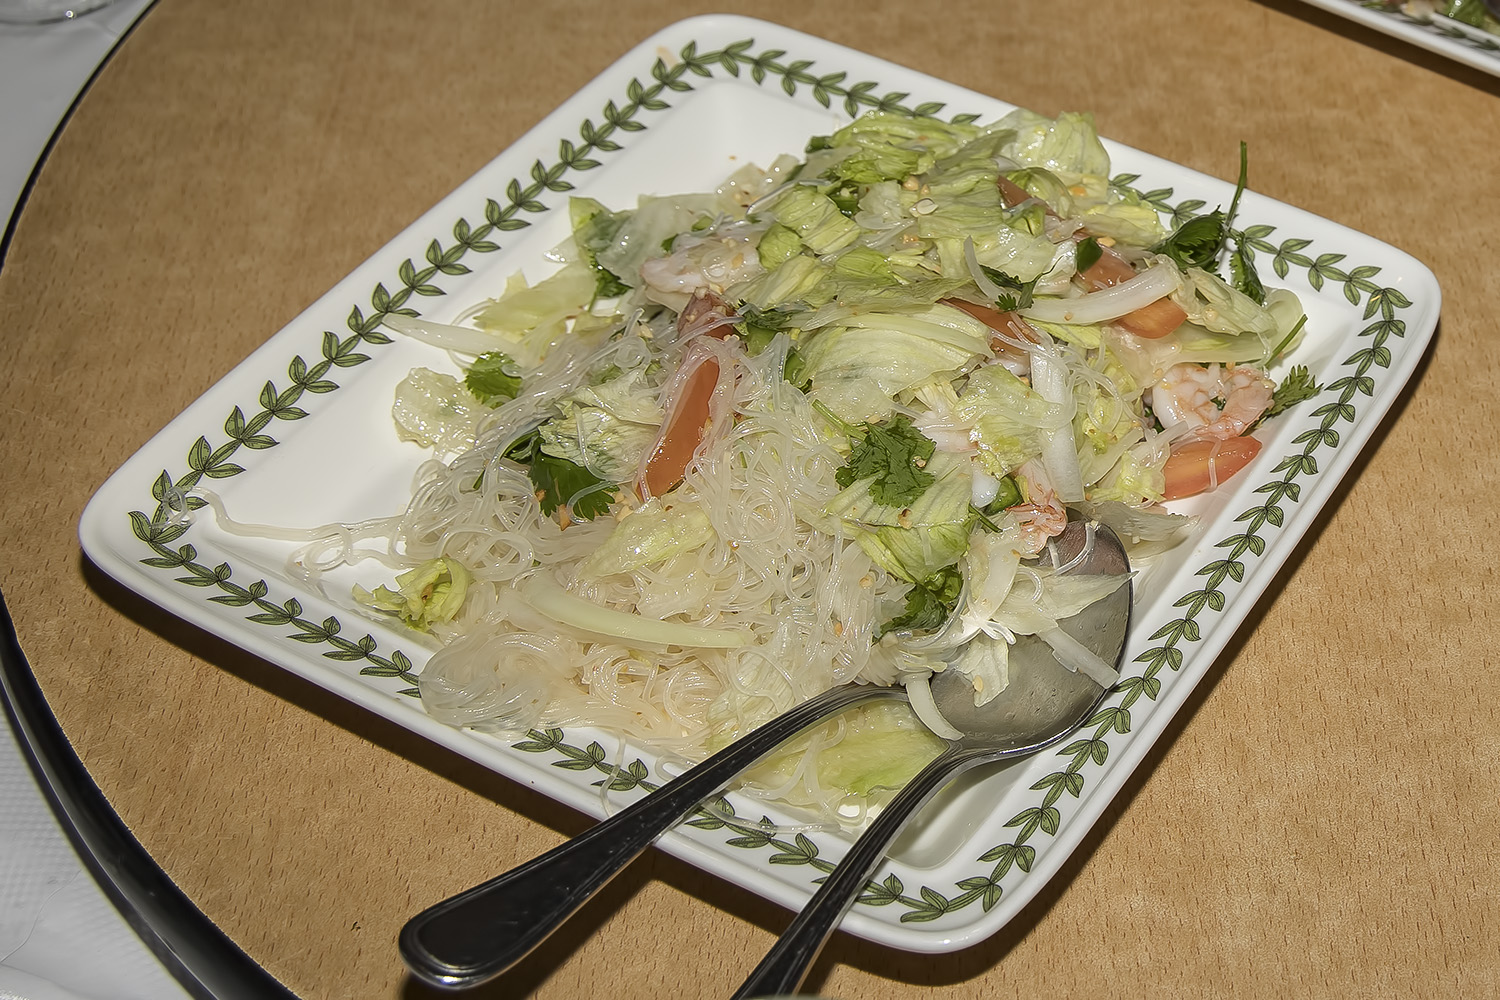 Glass noodle salad